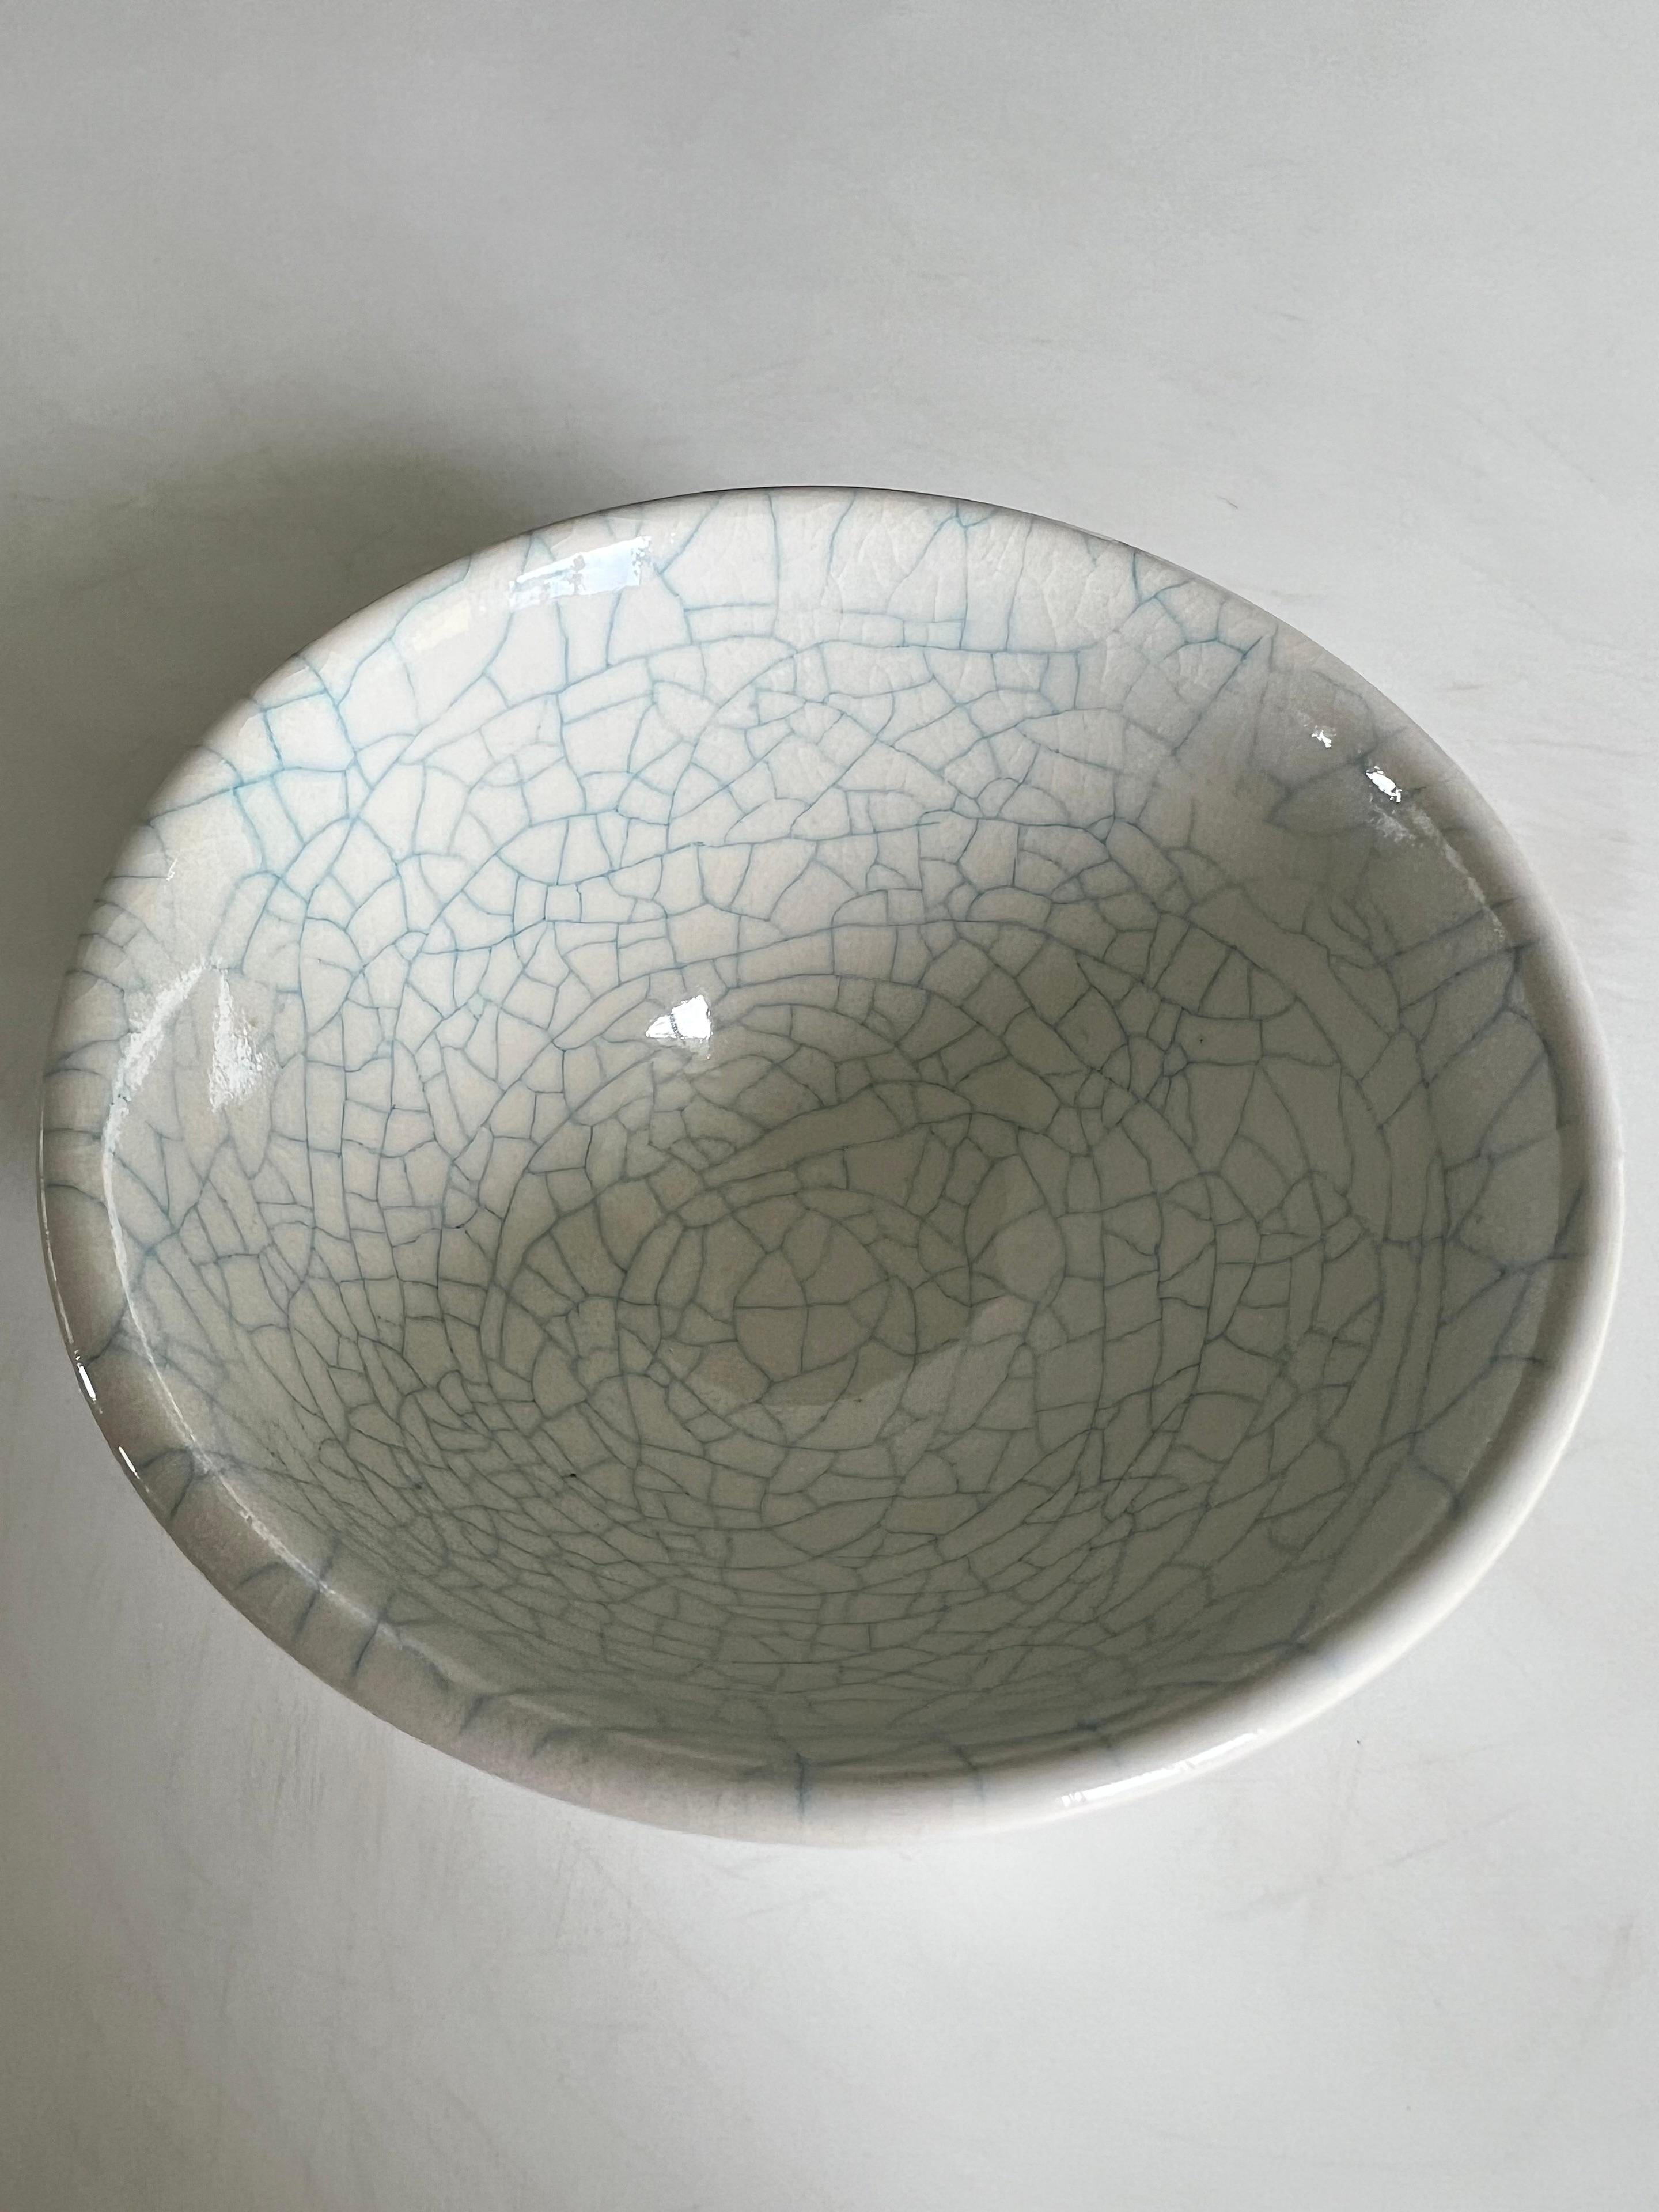 Keramik 12
Keramik
10,8 cm Durchmesser, 5,8 cm Höhe

Shin-Young Park ist eine in Korea geborene Neuseeländerin, die mit 16 Jahren mit ihrer Familie nach Auckland und 2006 nach Singapur zog. Sie schloss sowohl ihren BFA (1998) als auch ihren MFA